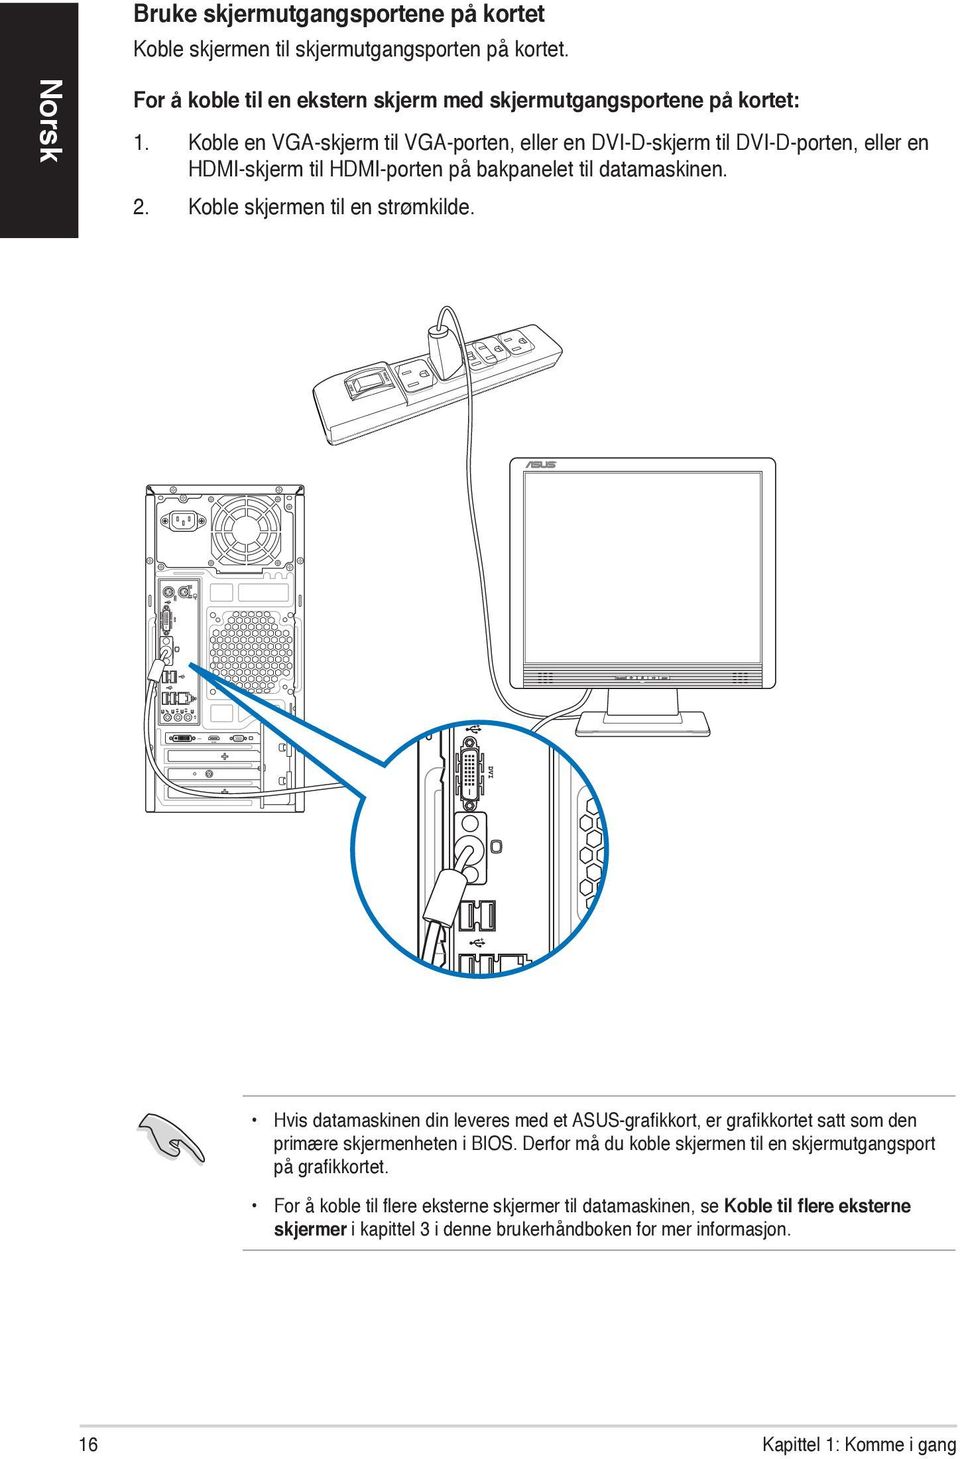 Koble skjermen til en strømkilde. Hvis datamaskinen din leveres med et ASUS-grafikkort, er grafikkortet satt som den primære skjermenheten i BIOS.